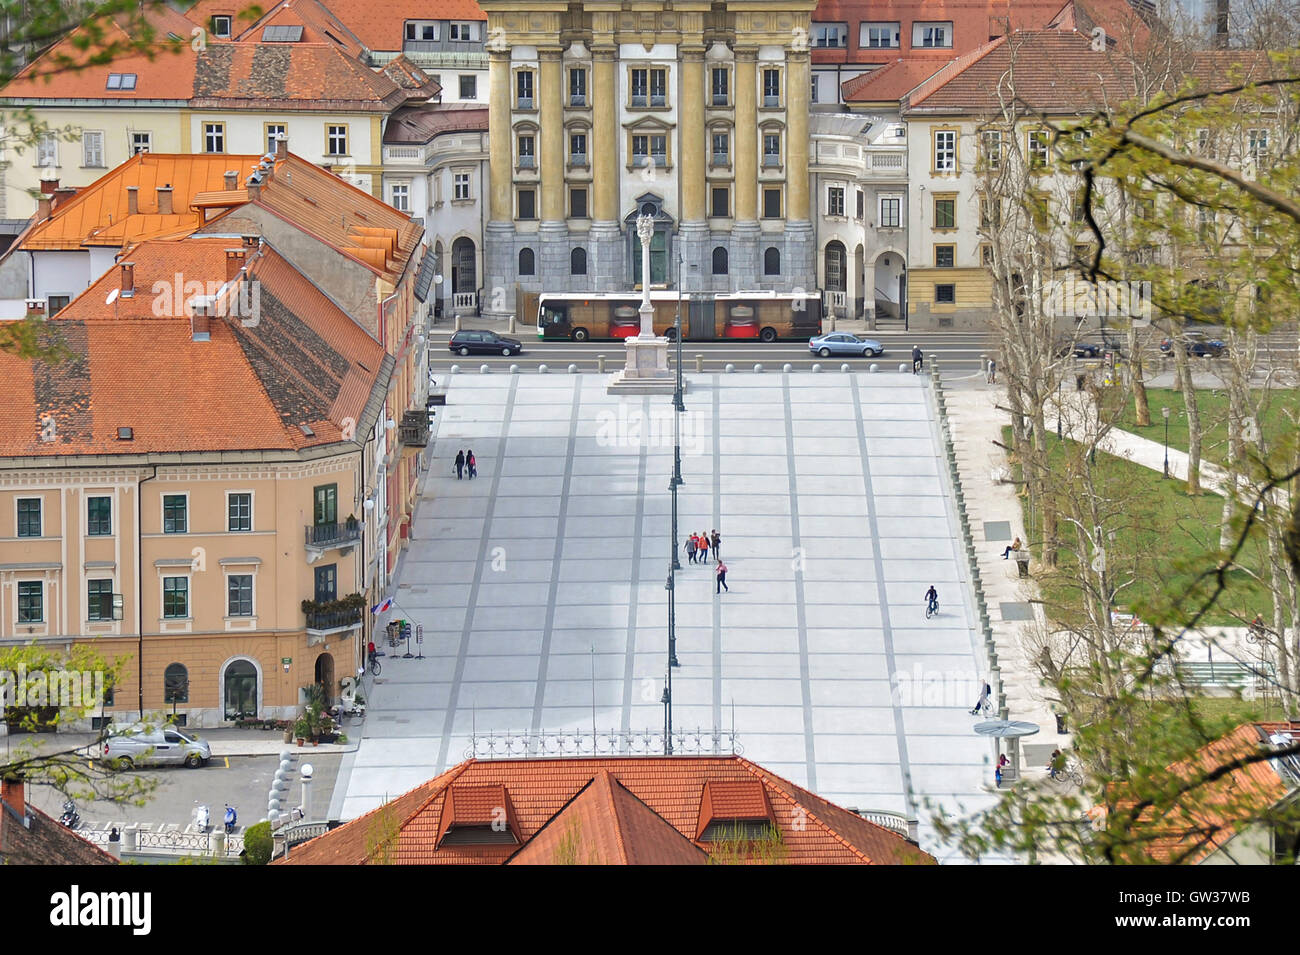 Congress square (kongresni trg), Ljubljana, Slovenia Stock Photo